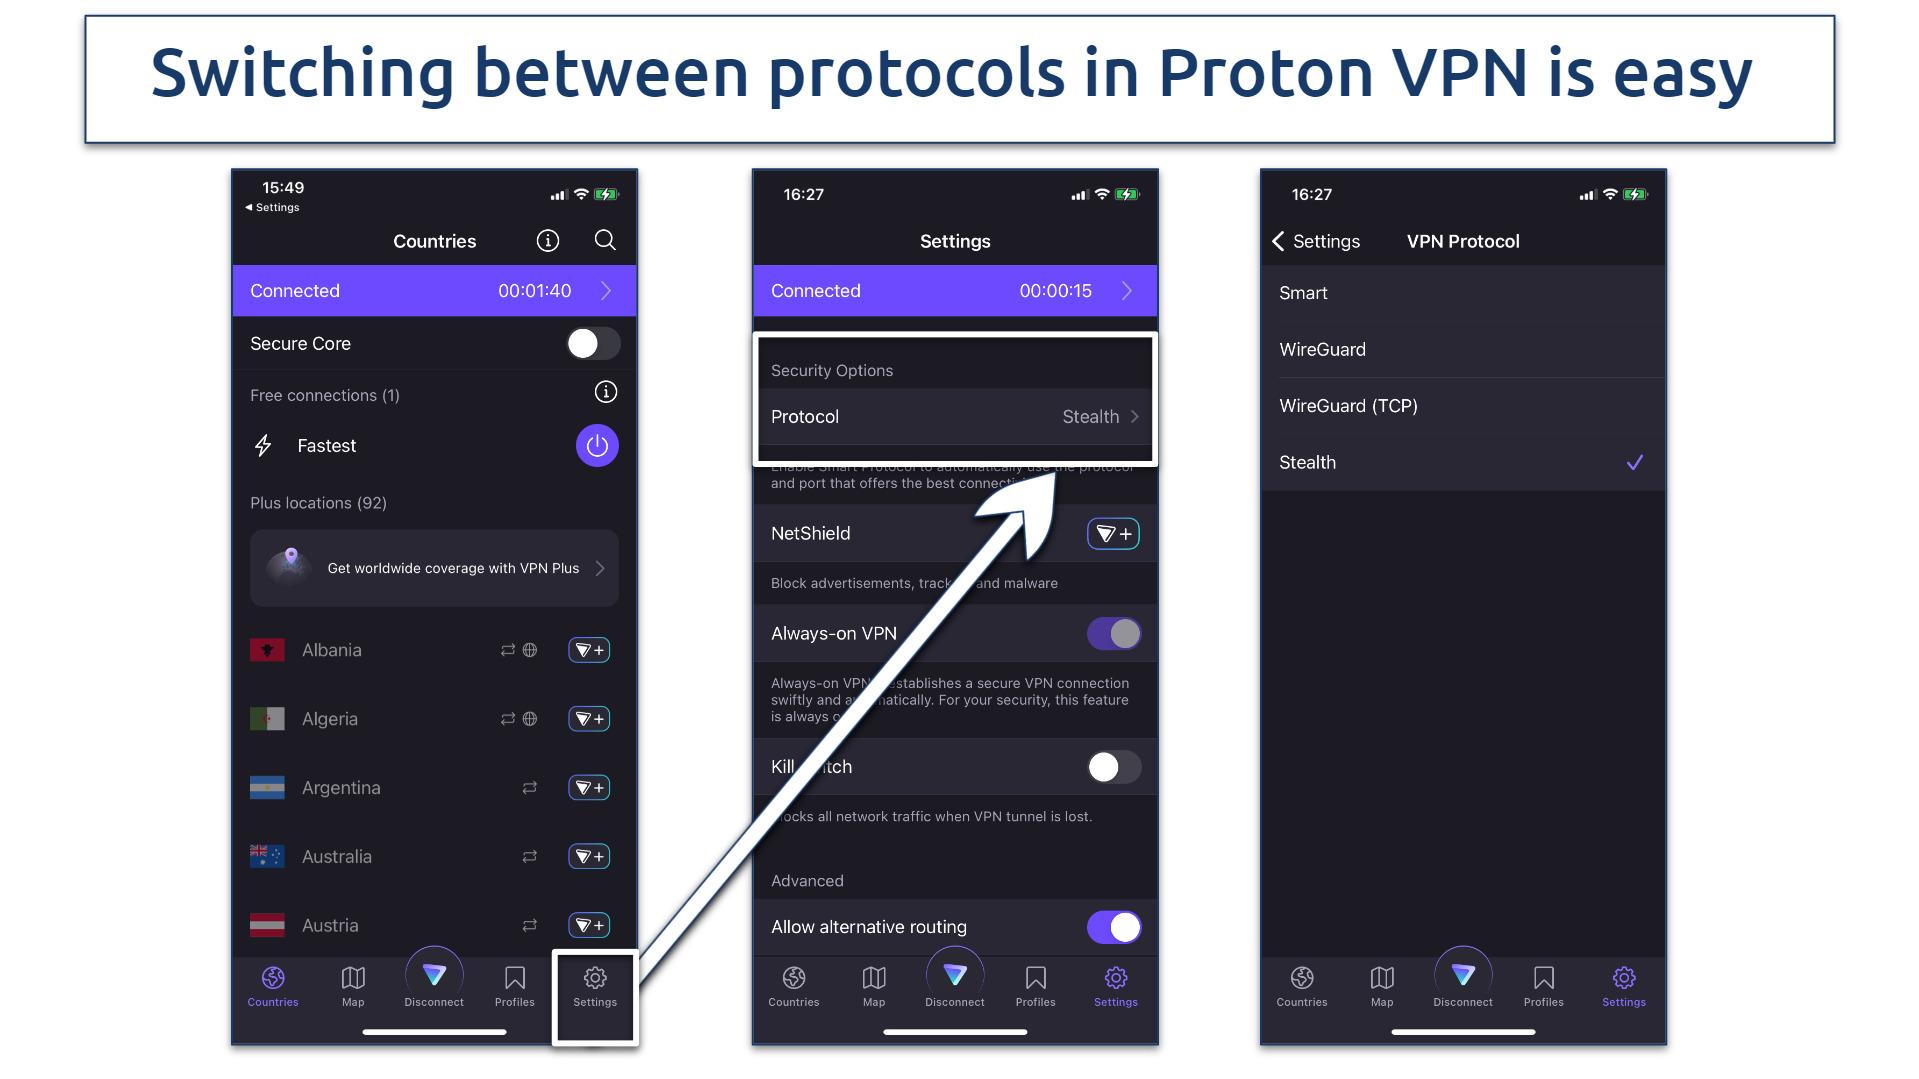 Screenshot of the VPN protocol list in Proton VPN app